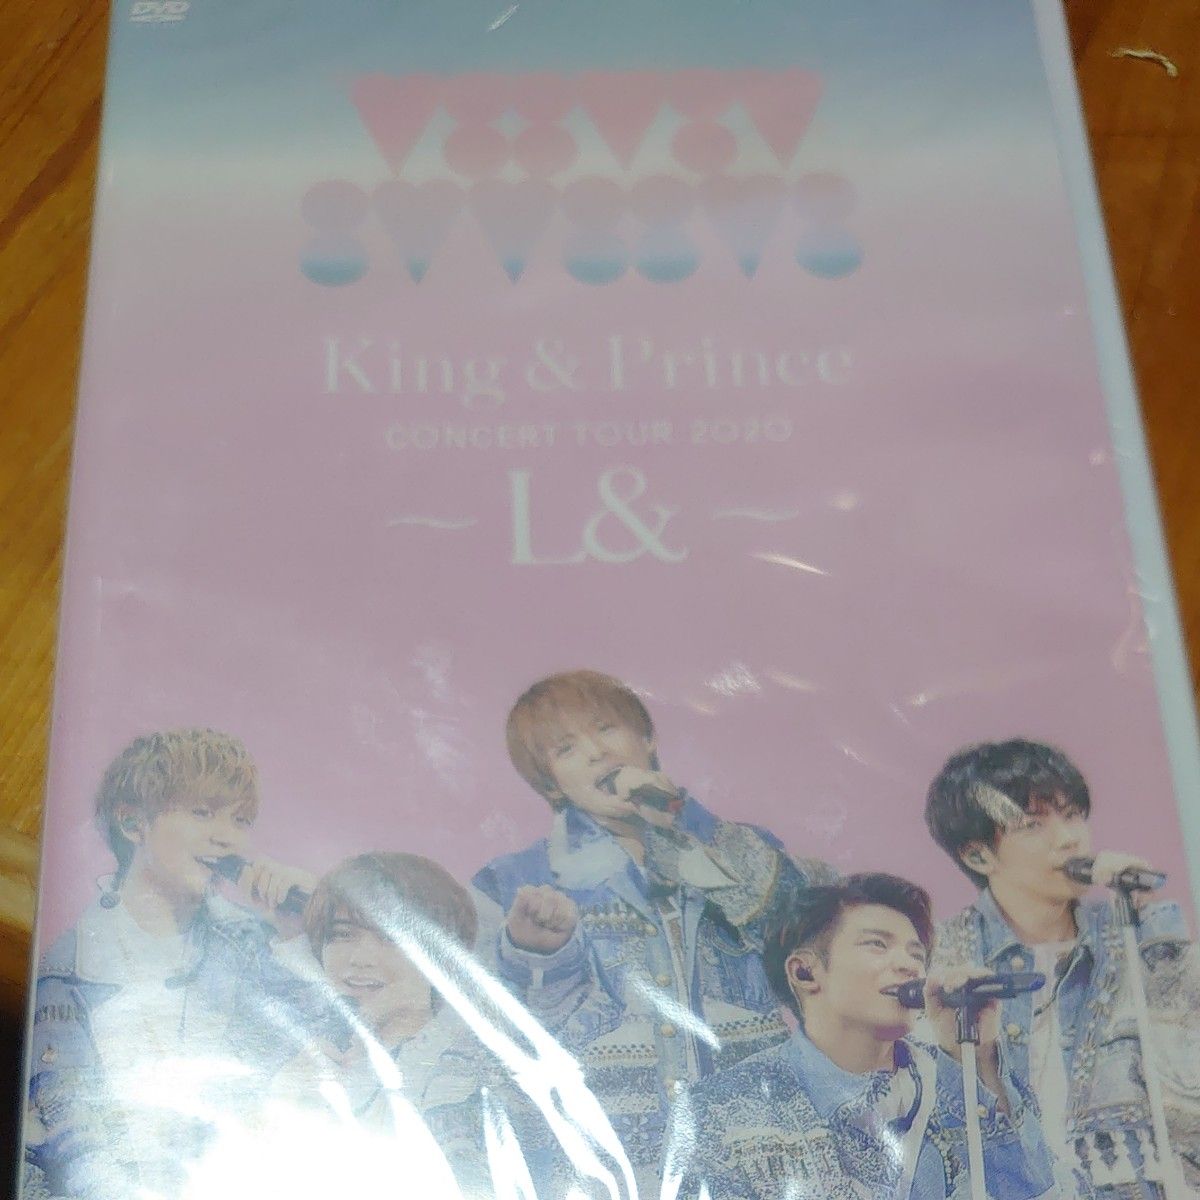 King & Prince concert tour 2020 ～L&～ 